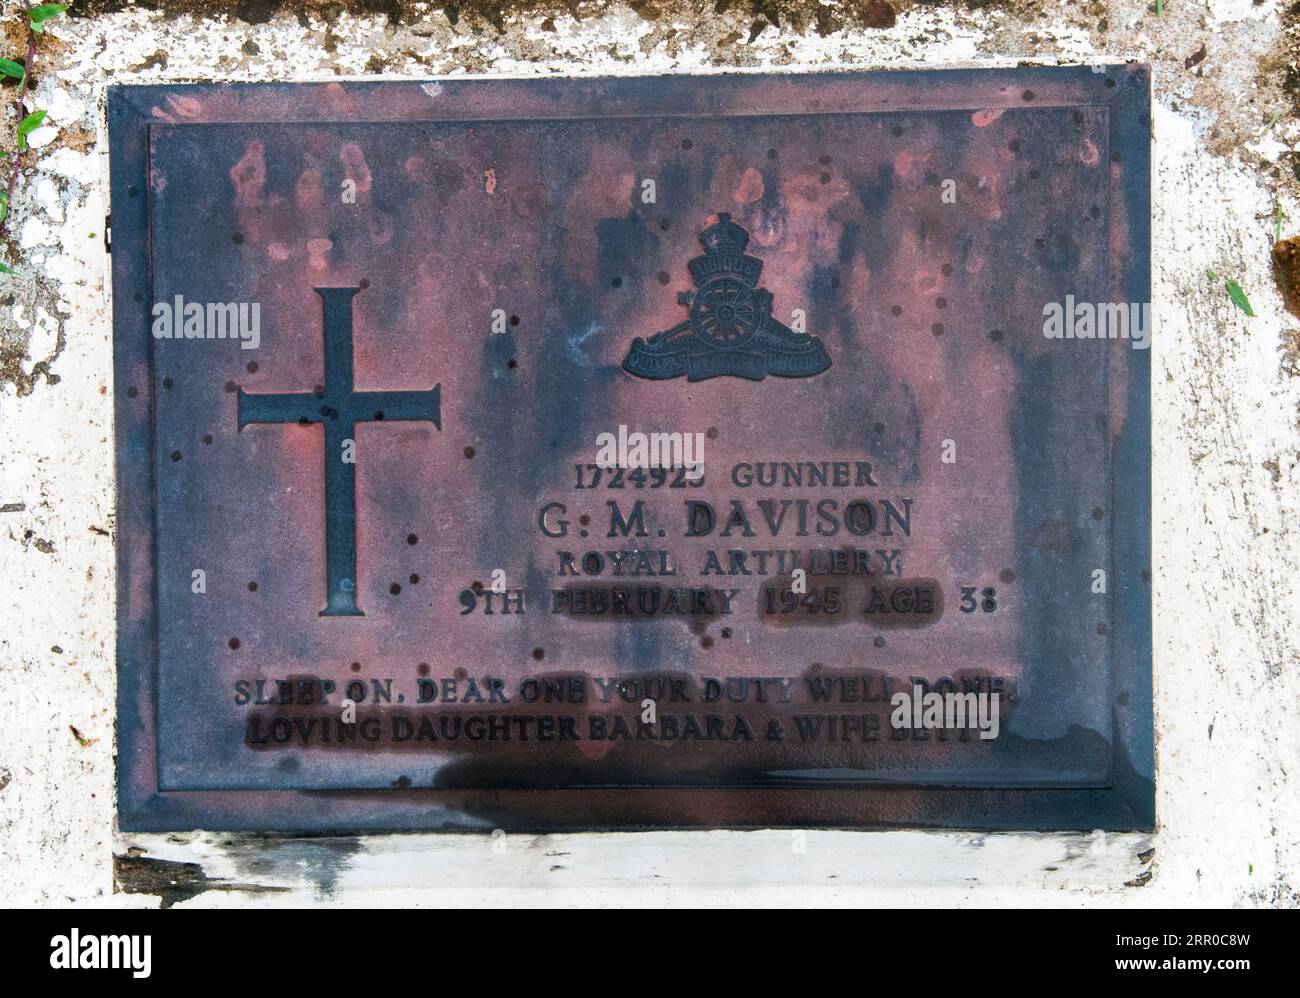 Tombe d'un militaire allié au cimetière militaire du Commonwealth sur l'île de Labuan, en Malaisie, où les forces japonaises à travers Bornéo se rendent en 1945 Banque D'Images